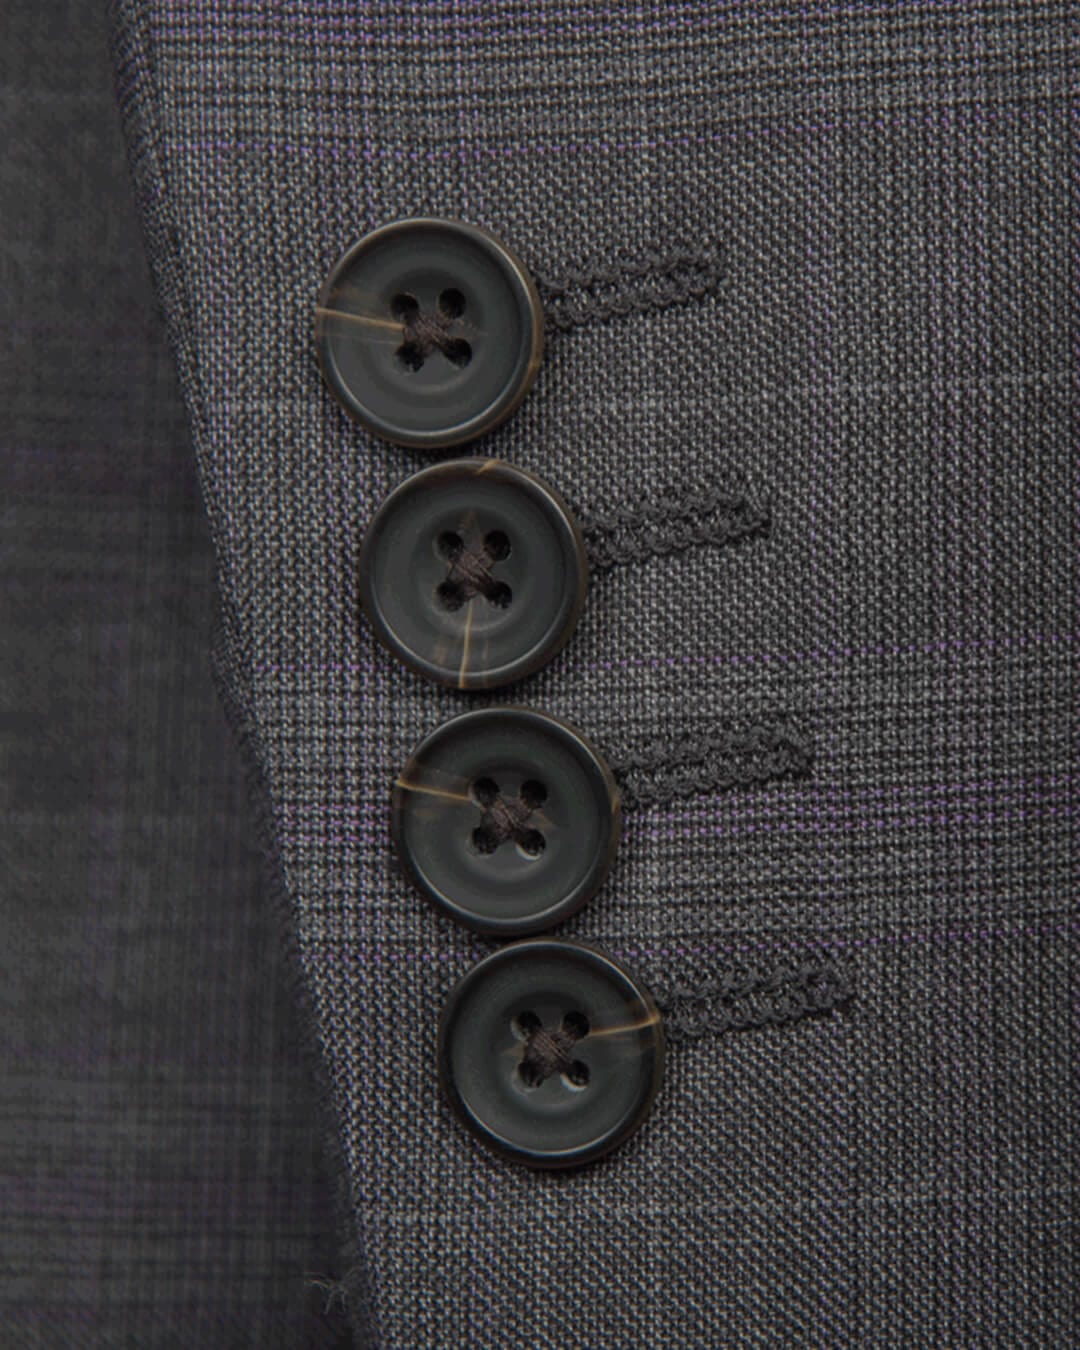 Gagliardi Suits Lanificio F.lli Cerruti Grey &amp; Purple Prince of Wales Two-Piece Suit